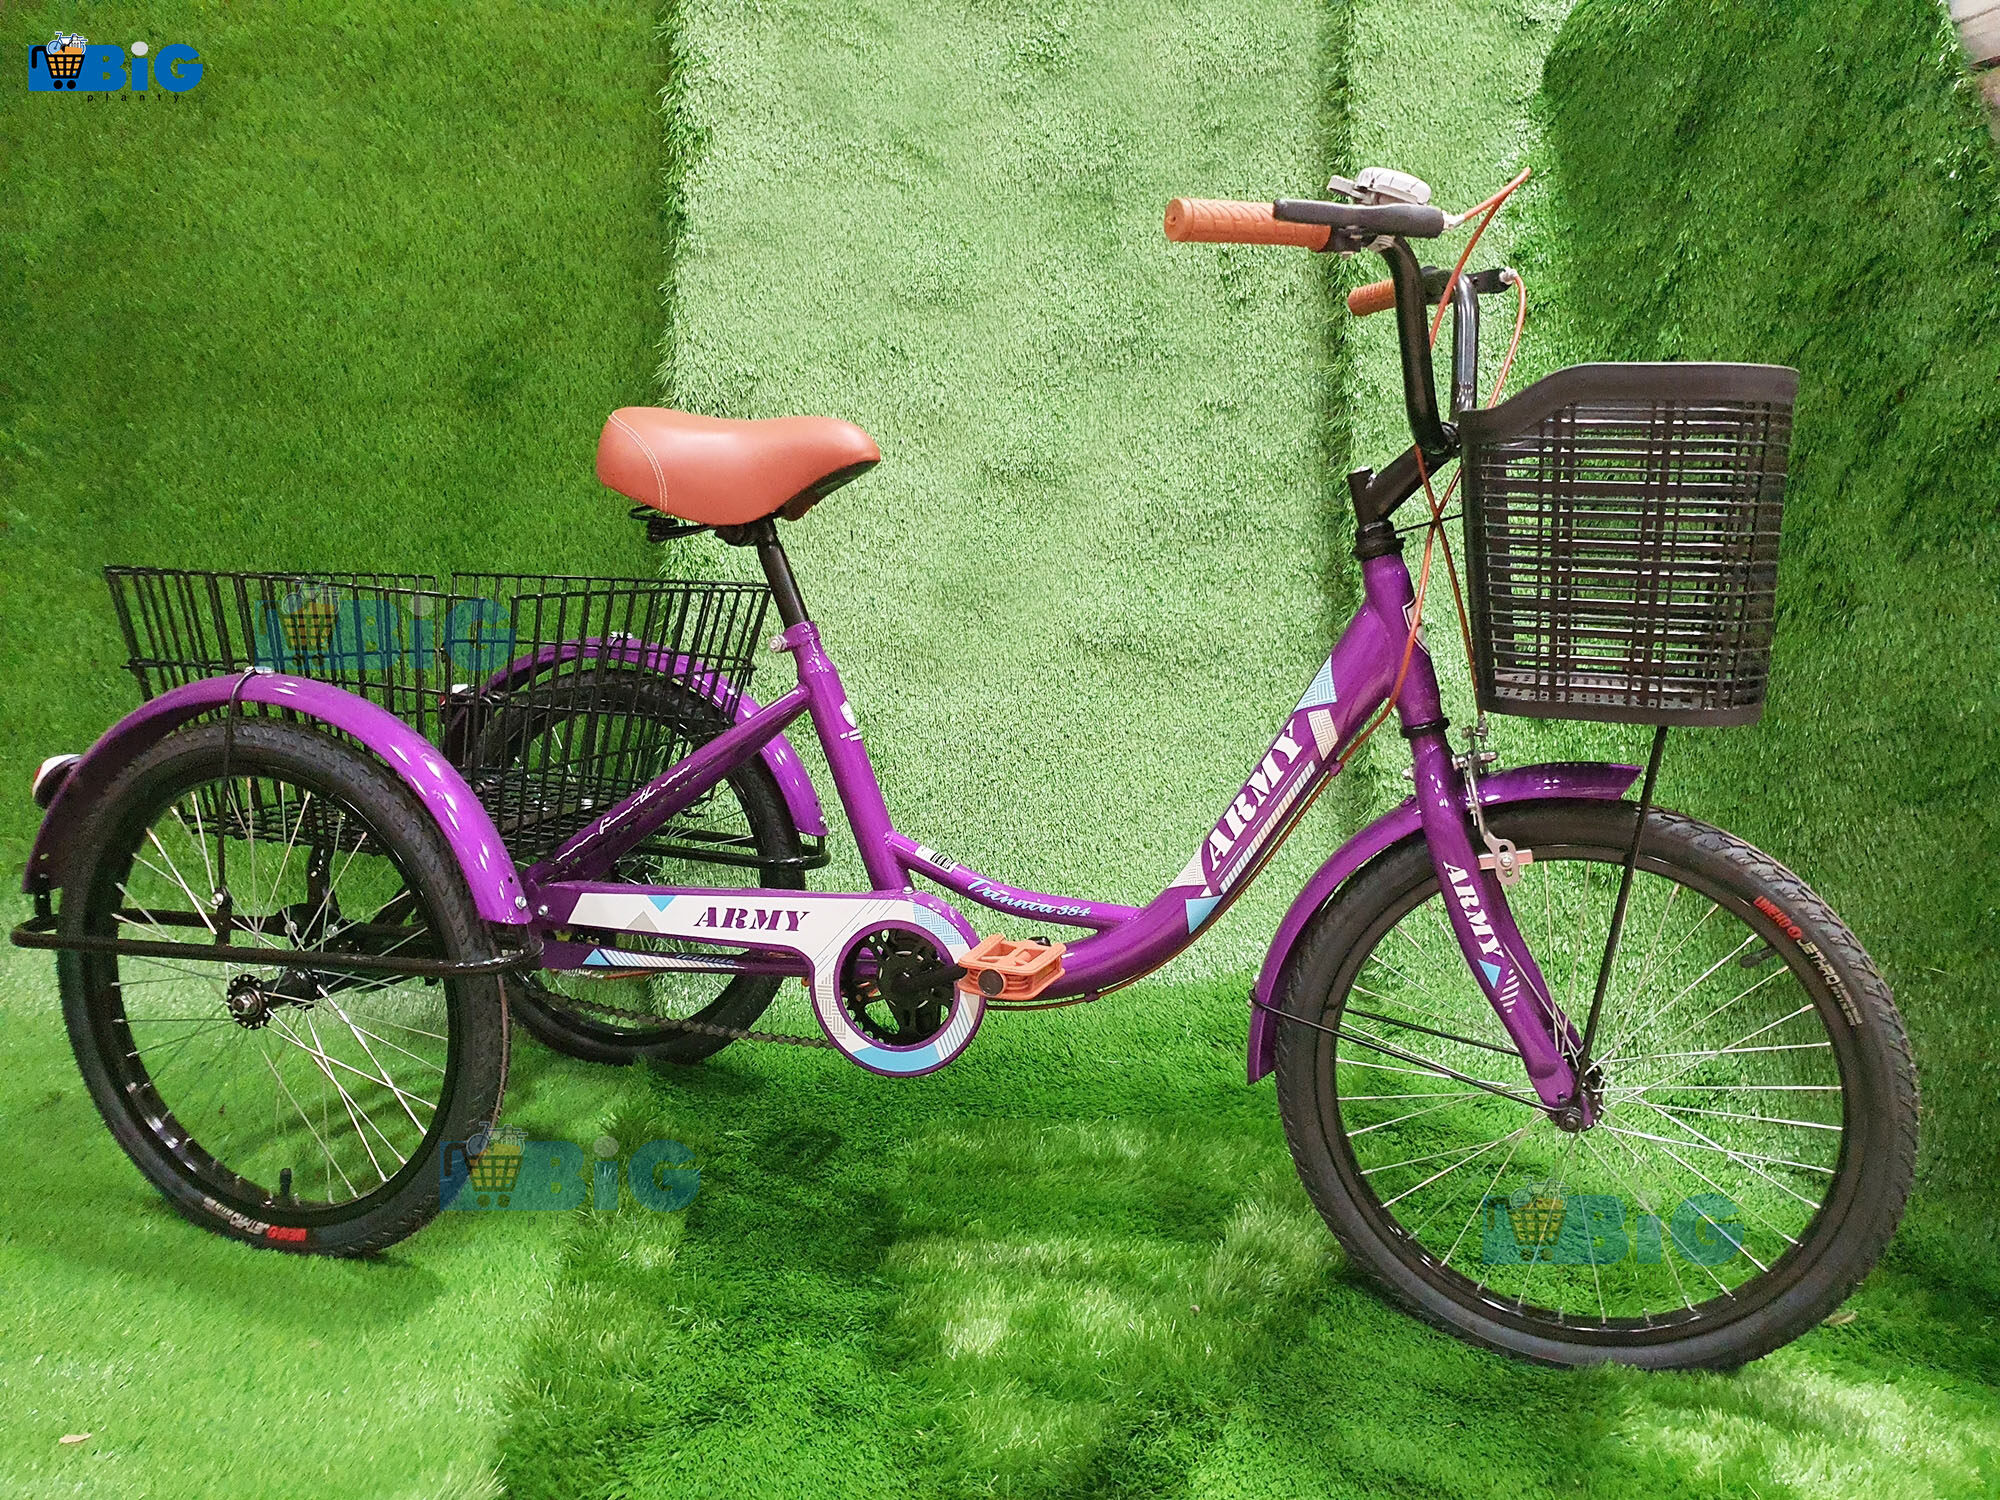 BigPlanty จักรยานสามล้อผู้ใหญ่ NO. 009 ขนาด 20 นิ้ว ตระกร้าใหญ่ สีม่วง